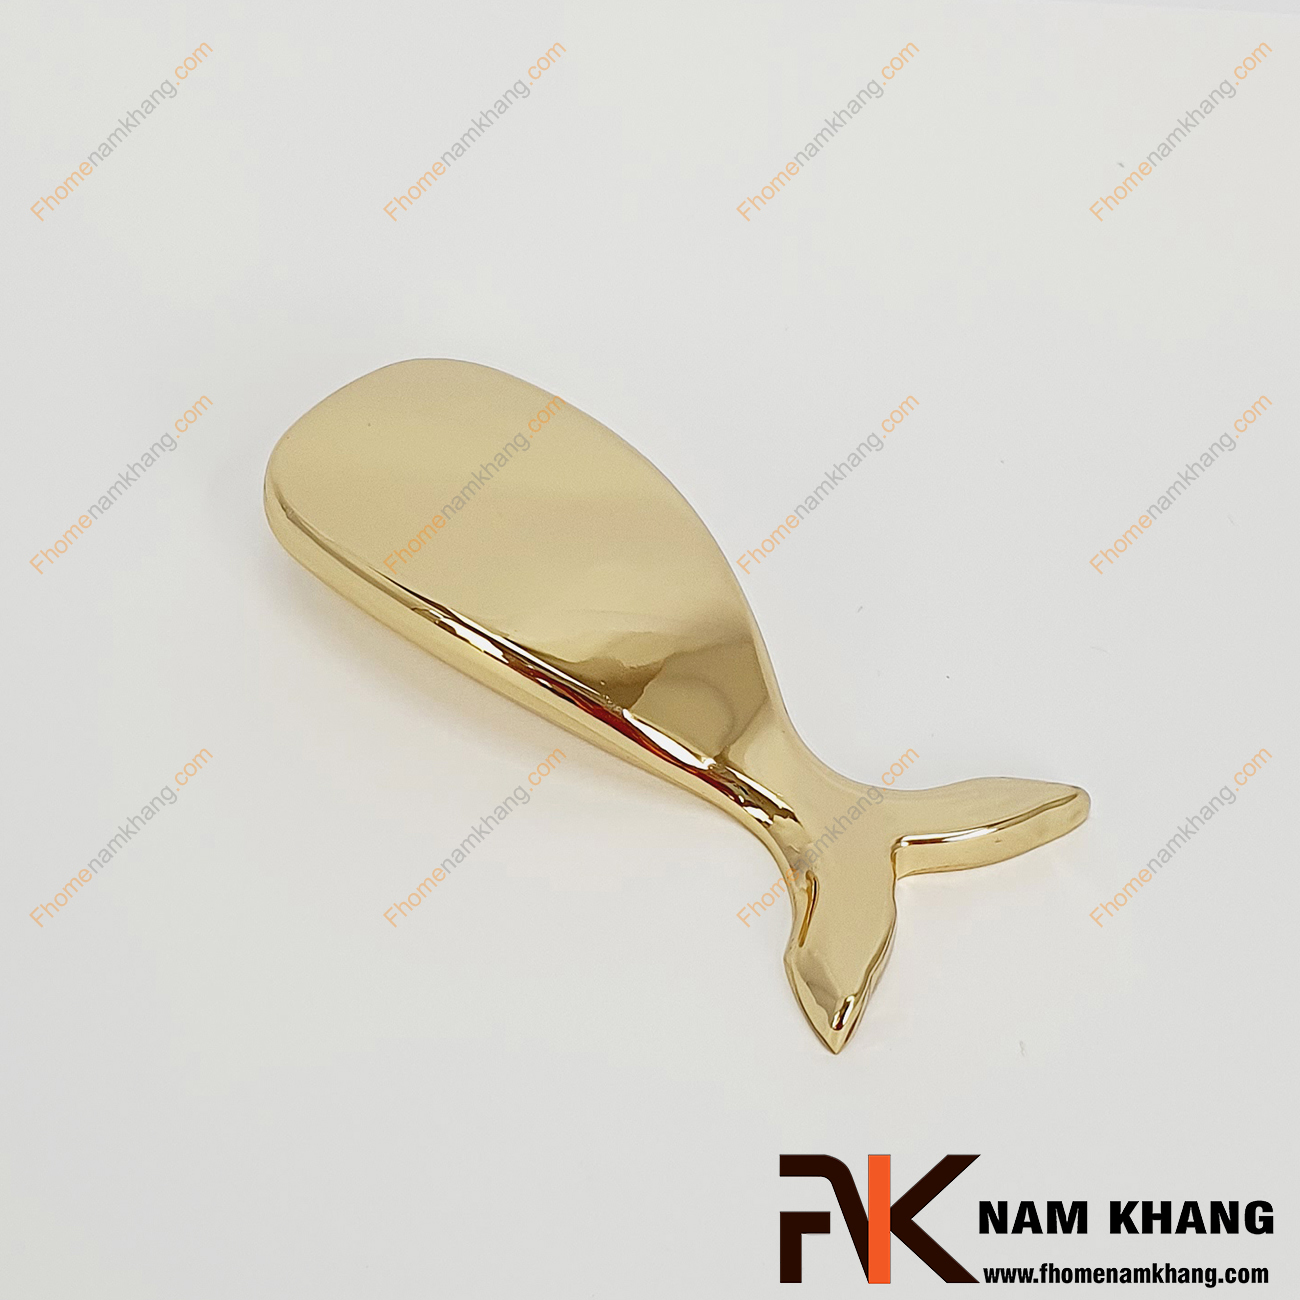 Tay nắm tủ dạng cá voi vàng bóng NK287CC-V là mẫu tay nắm tủ đặc biệt dạng cá voi độc đáo. Sản phẩm chất lượng từ hợp kim cao cấp, dễ dàng lắp đặt và gây ấn tượng mạnh ngay từ những ánh nhìn đầu tiên